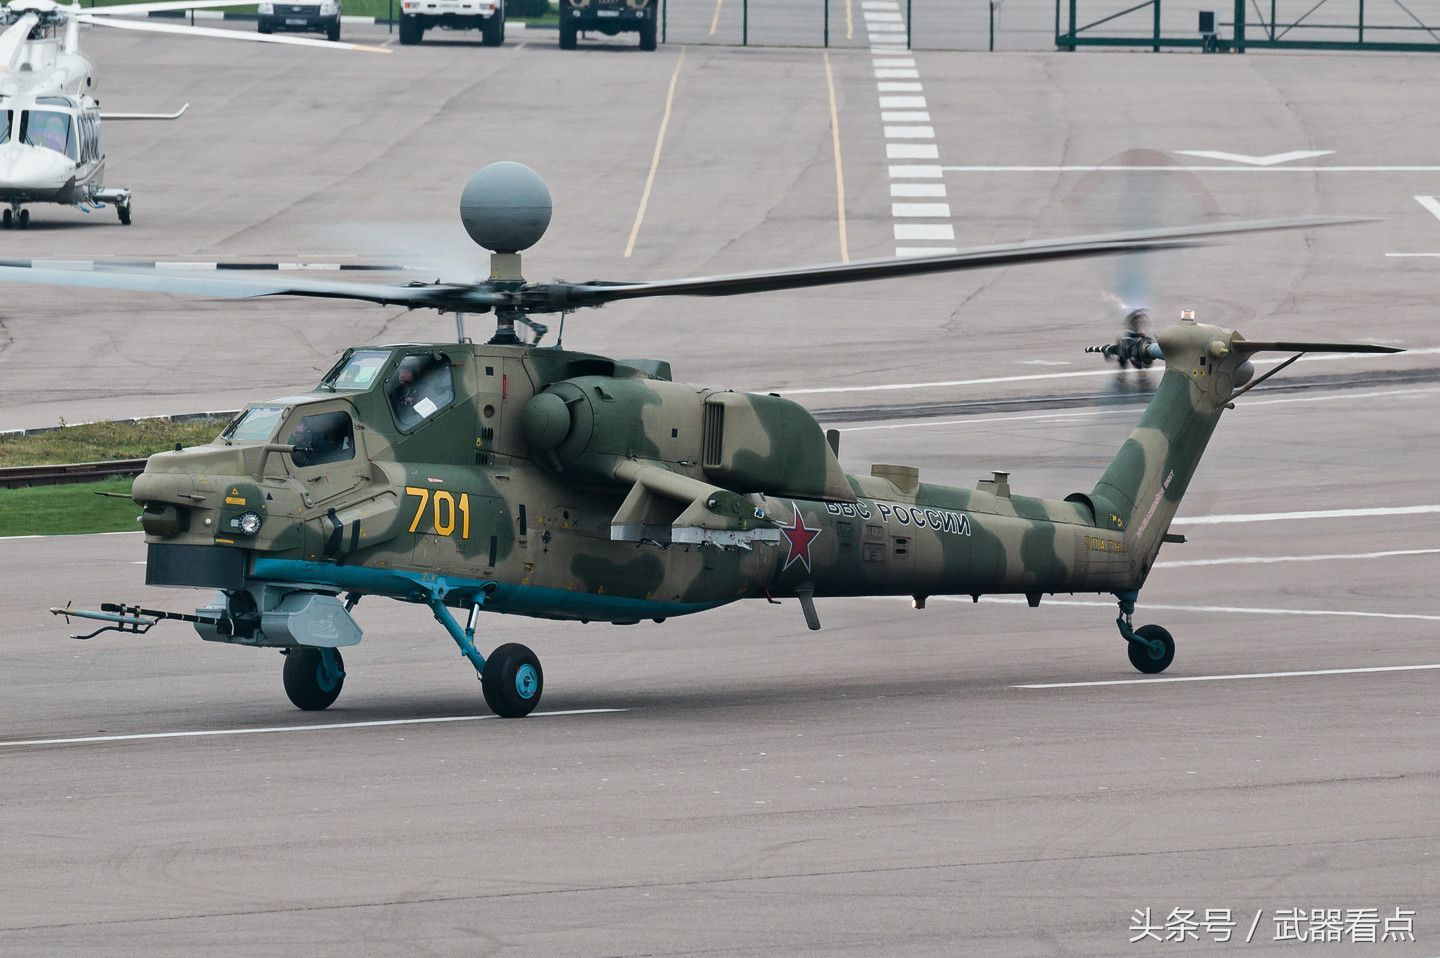 米—28 浩劫 系列武装直升机——高清相片